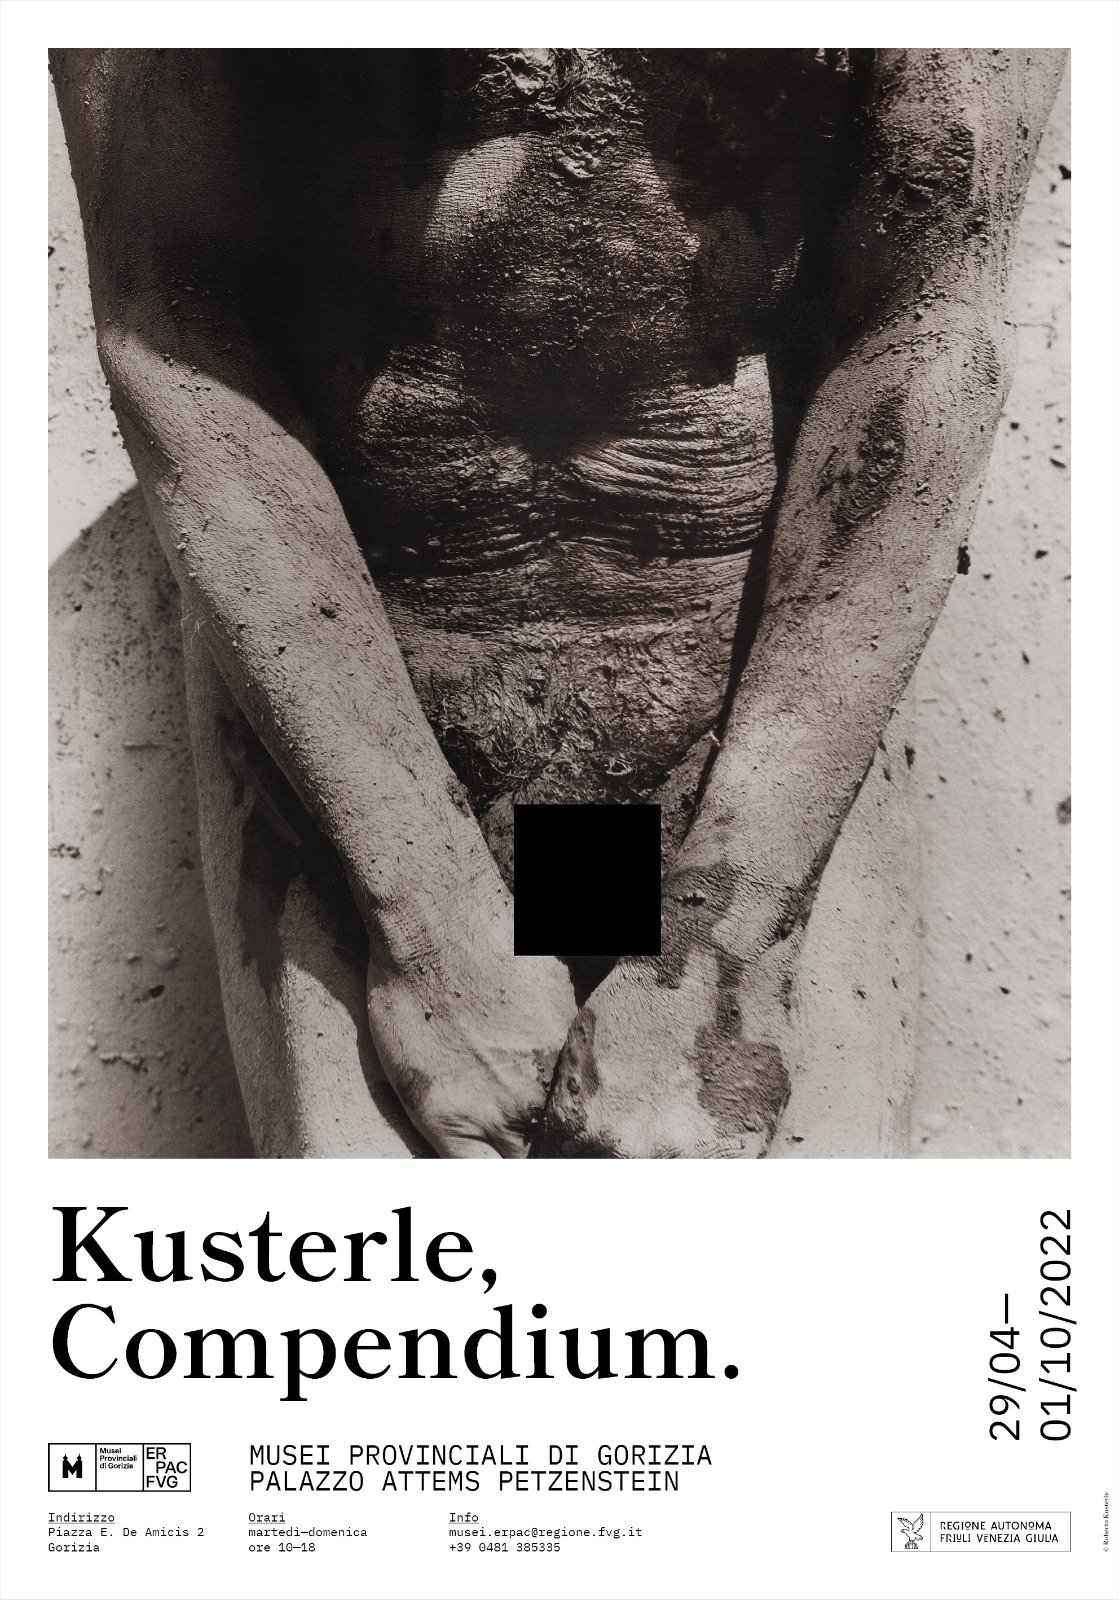 Roberto Kusterle – Compendium